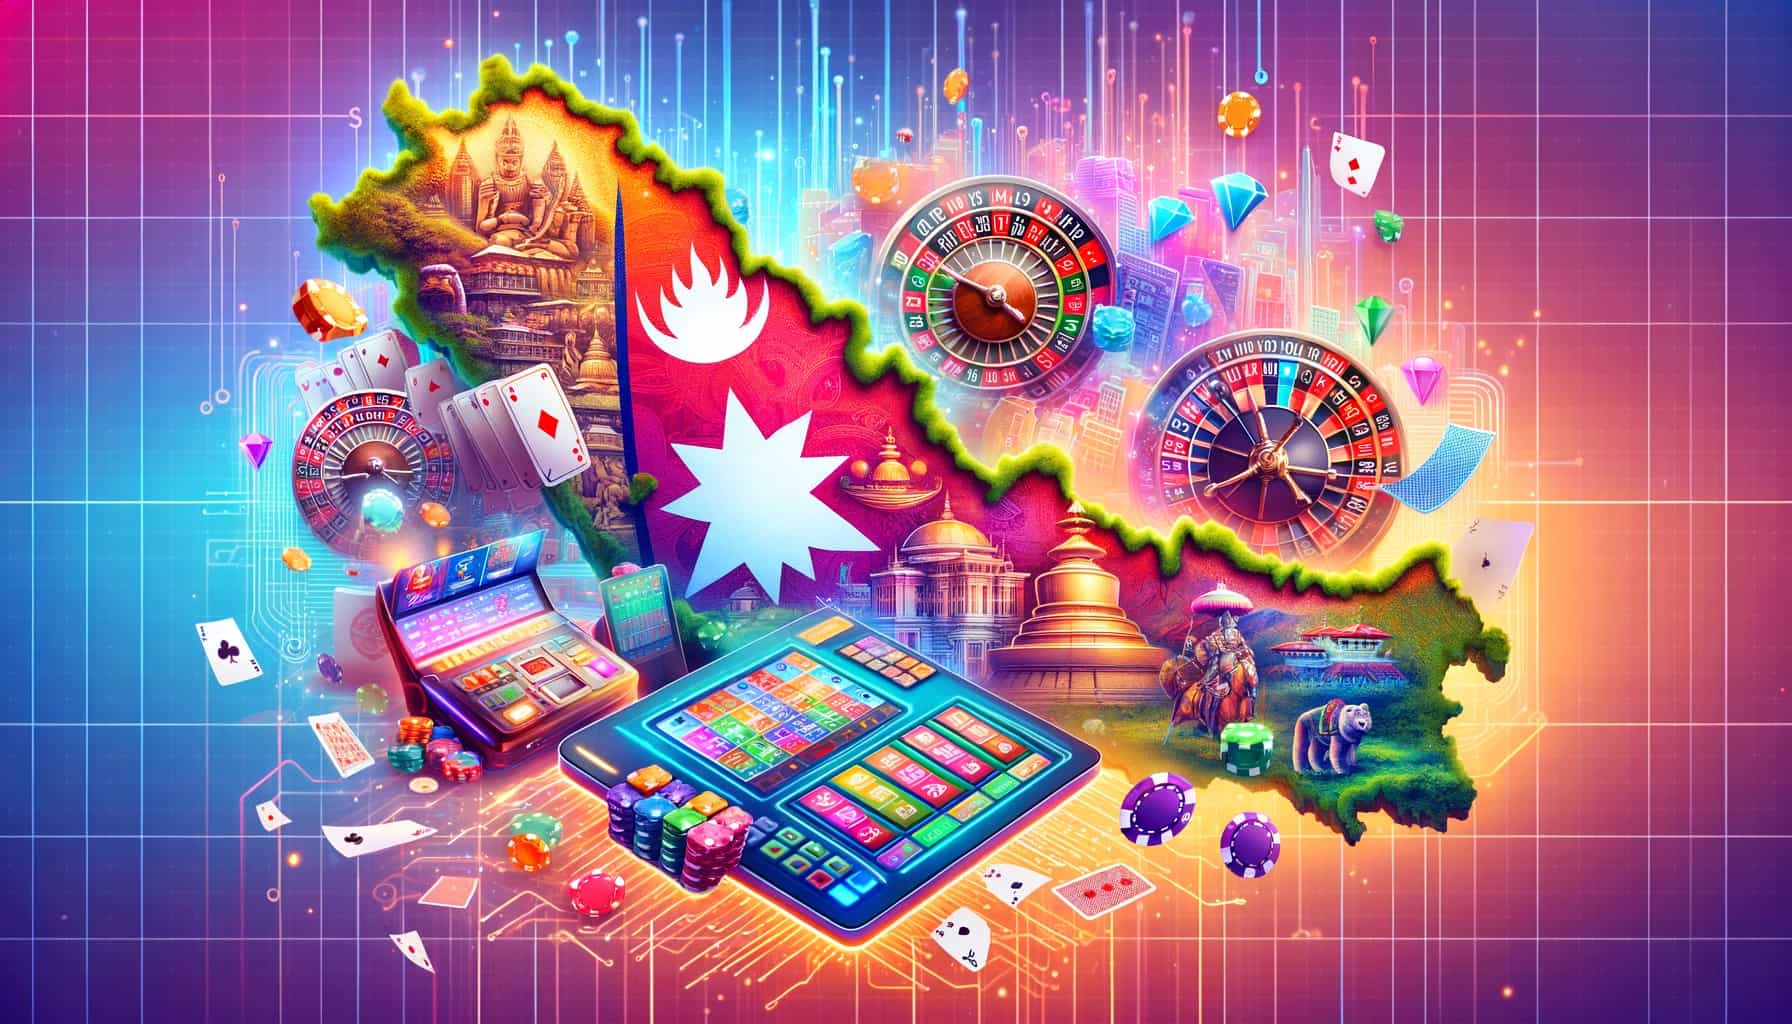 Online Casino Nepal